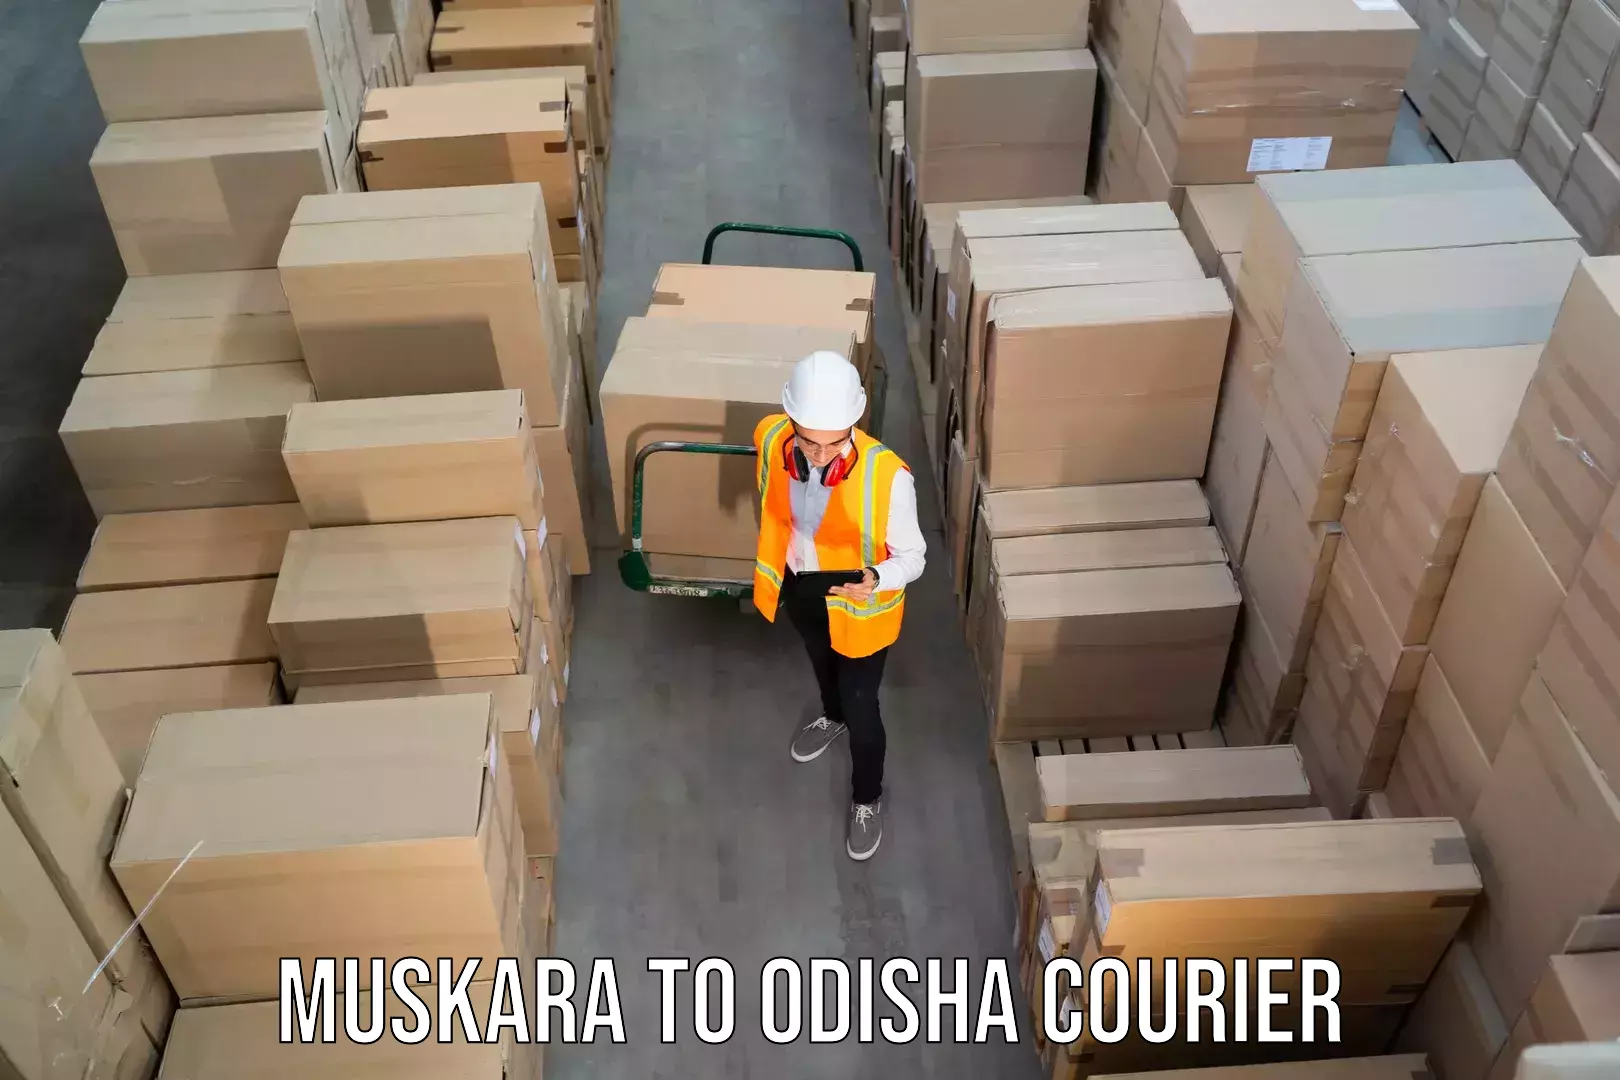 Quality courier partnerships Muskara to Nimapara